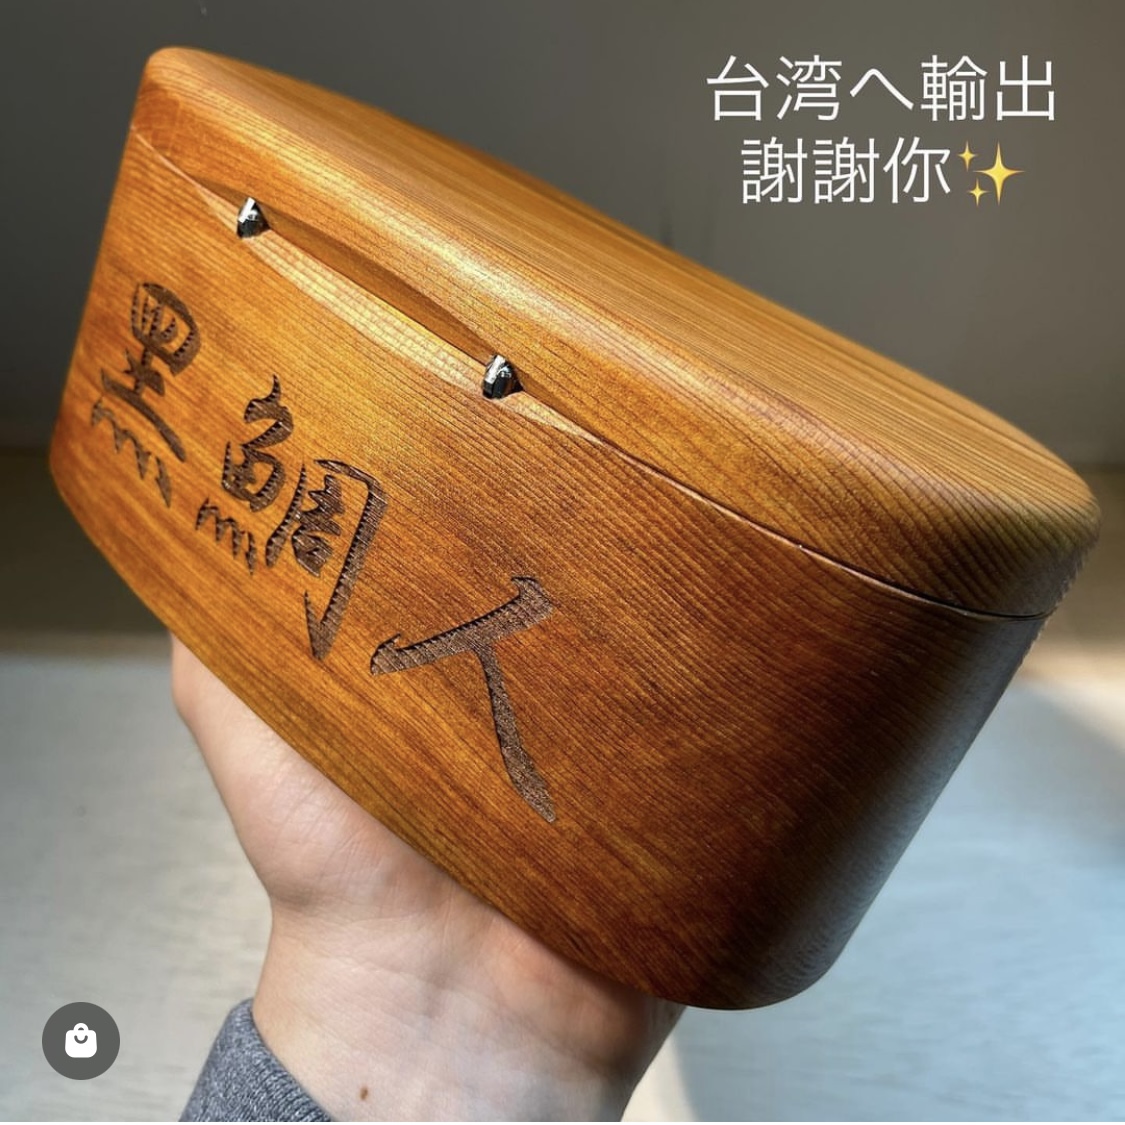 木製 黒鯛 餌箱M二層 金属ワンタッチ AAA ヘチ釣り【受注生産 